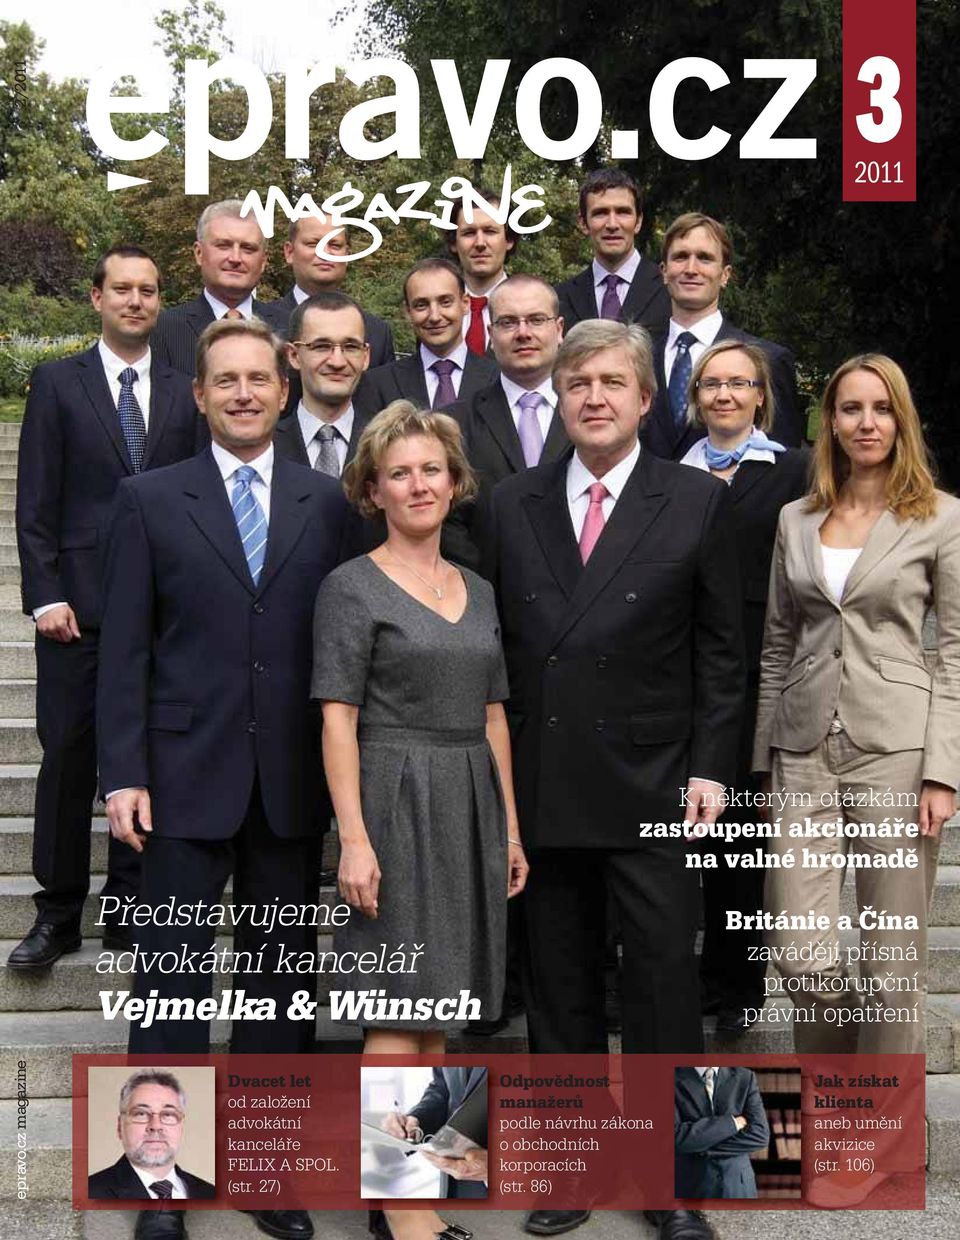 proniknutelné. advokátní kancelář Vejmelka & Wünsch Dvacet let od založení advokátní kanceláře FELIX A SPOL. (str.